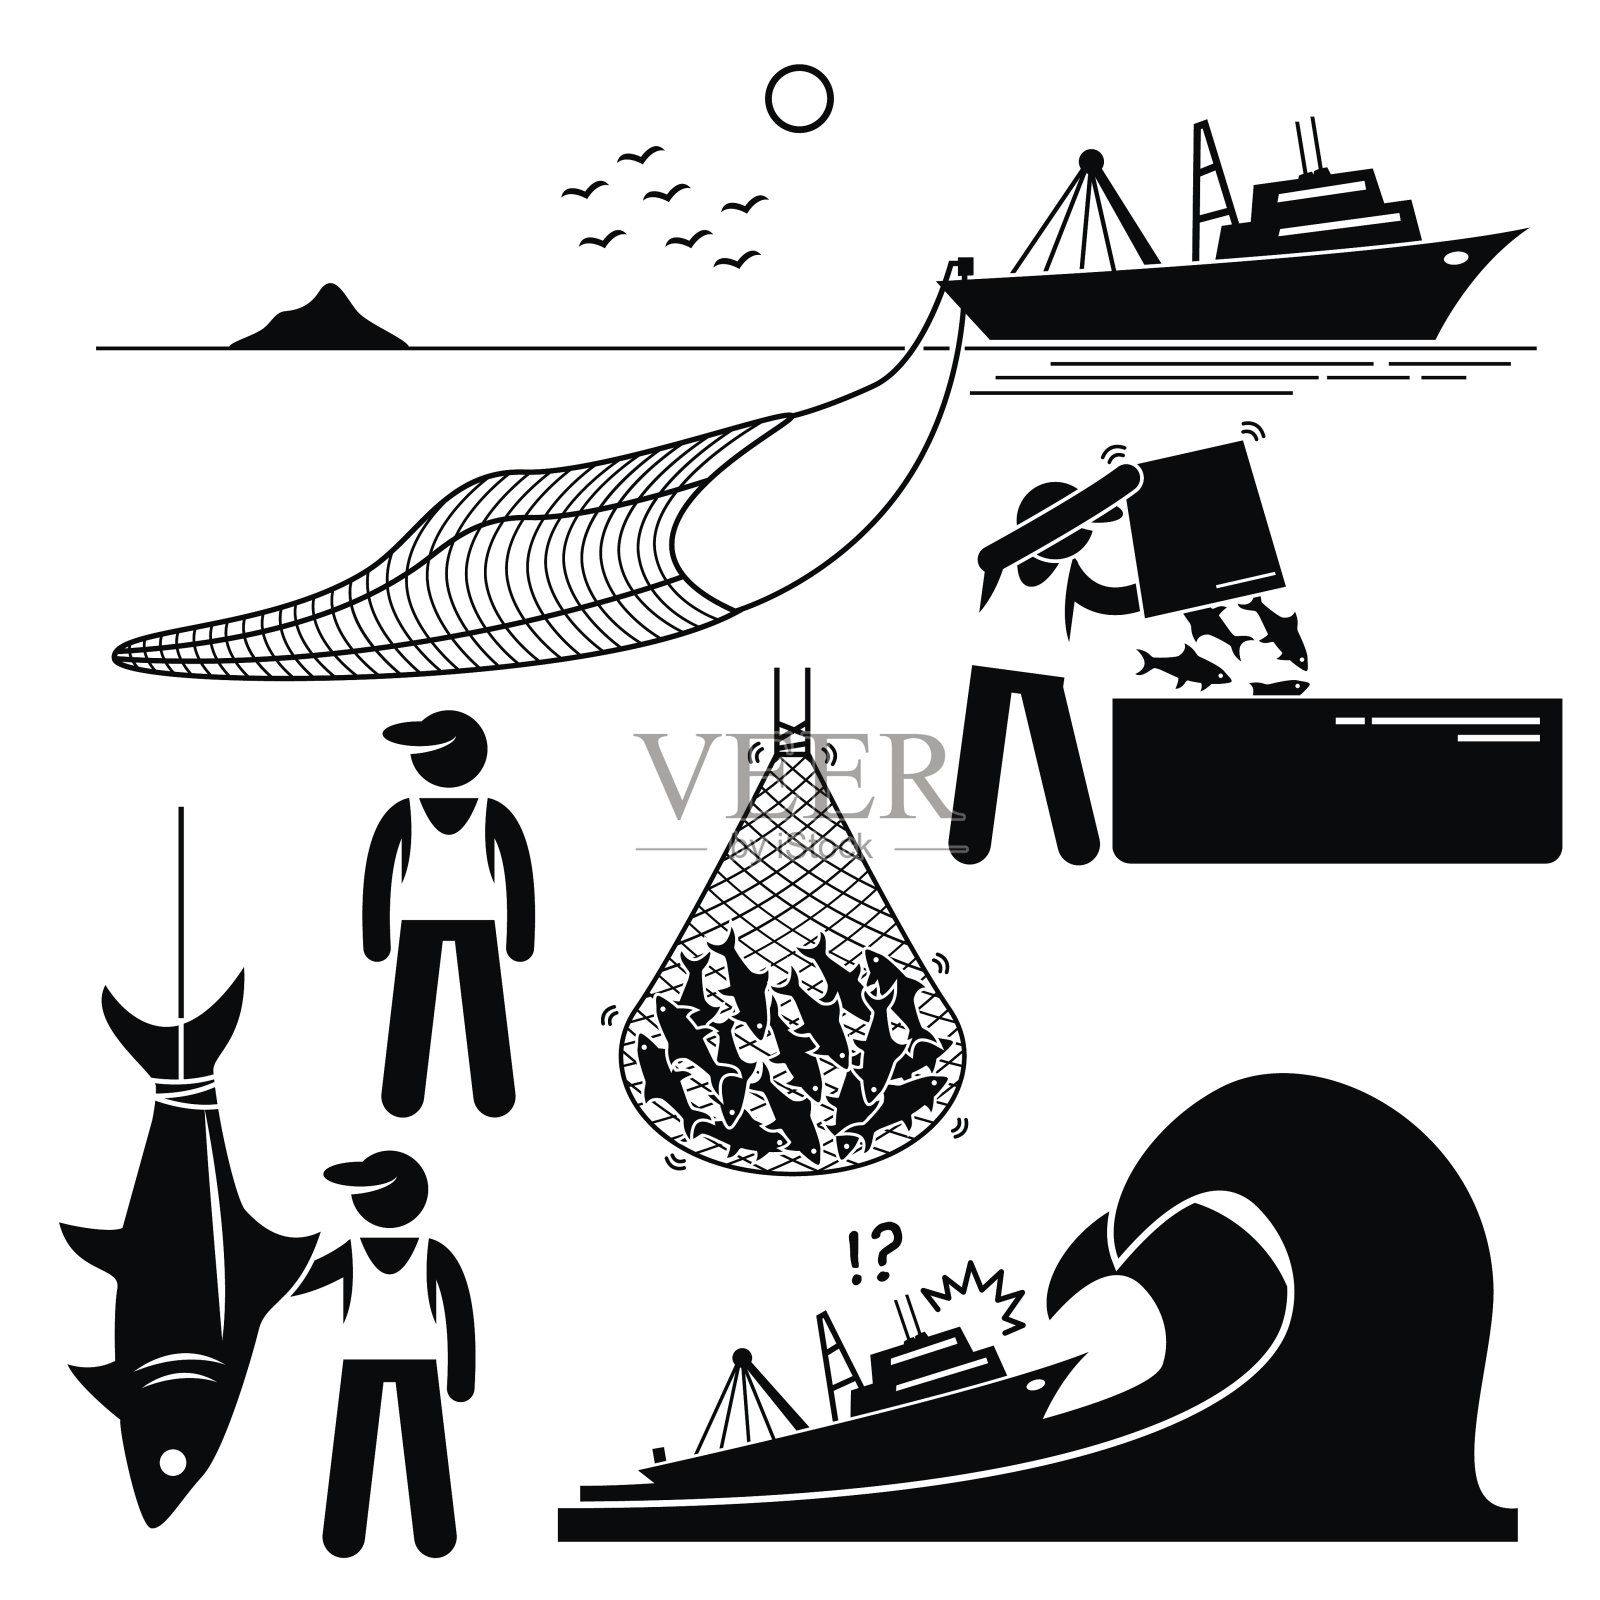 渔民渔业工业工业象形图插画图片素材